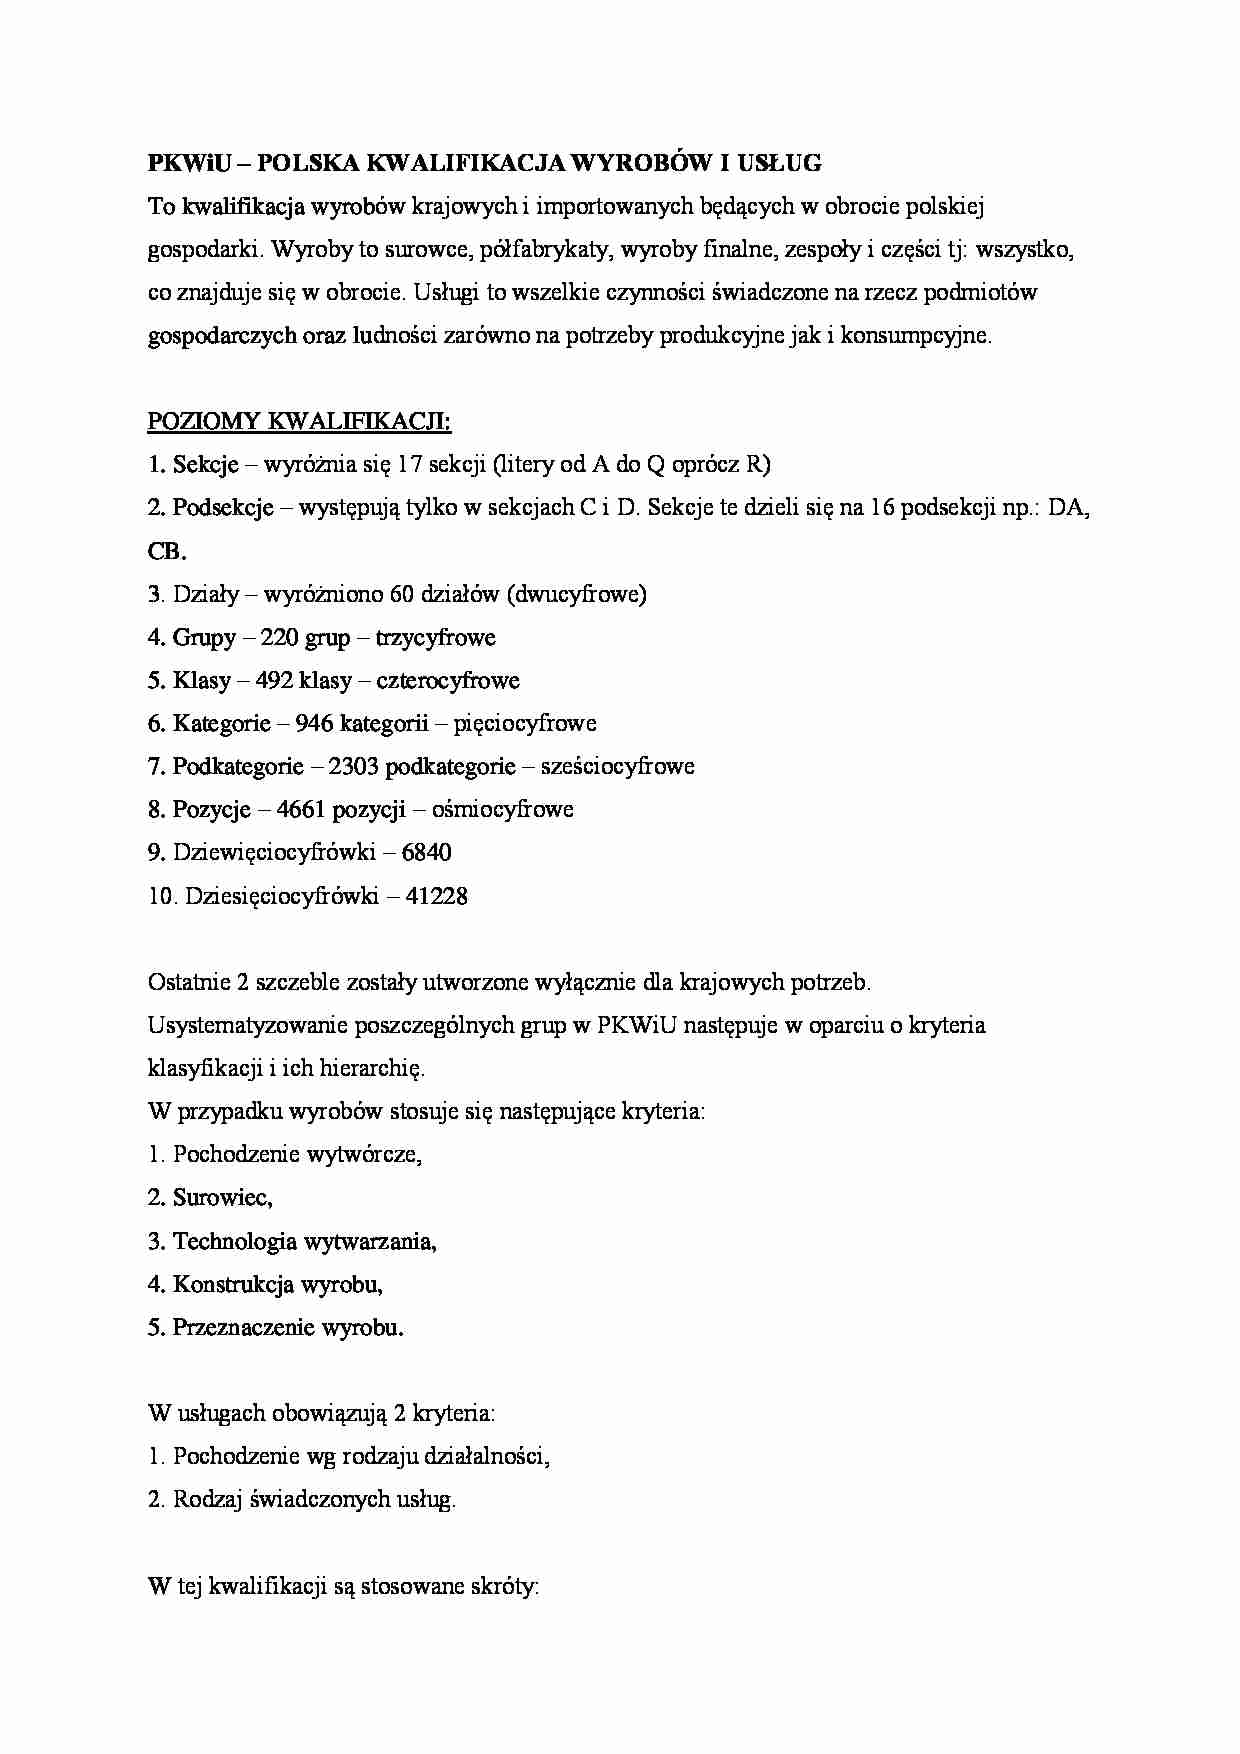 Polska kwalifikacja wyrobów i usług - omówienie - Sekcje - strona 1